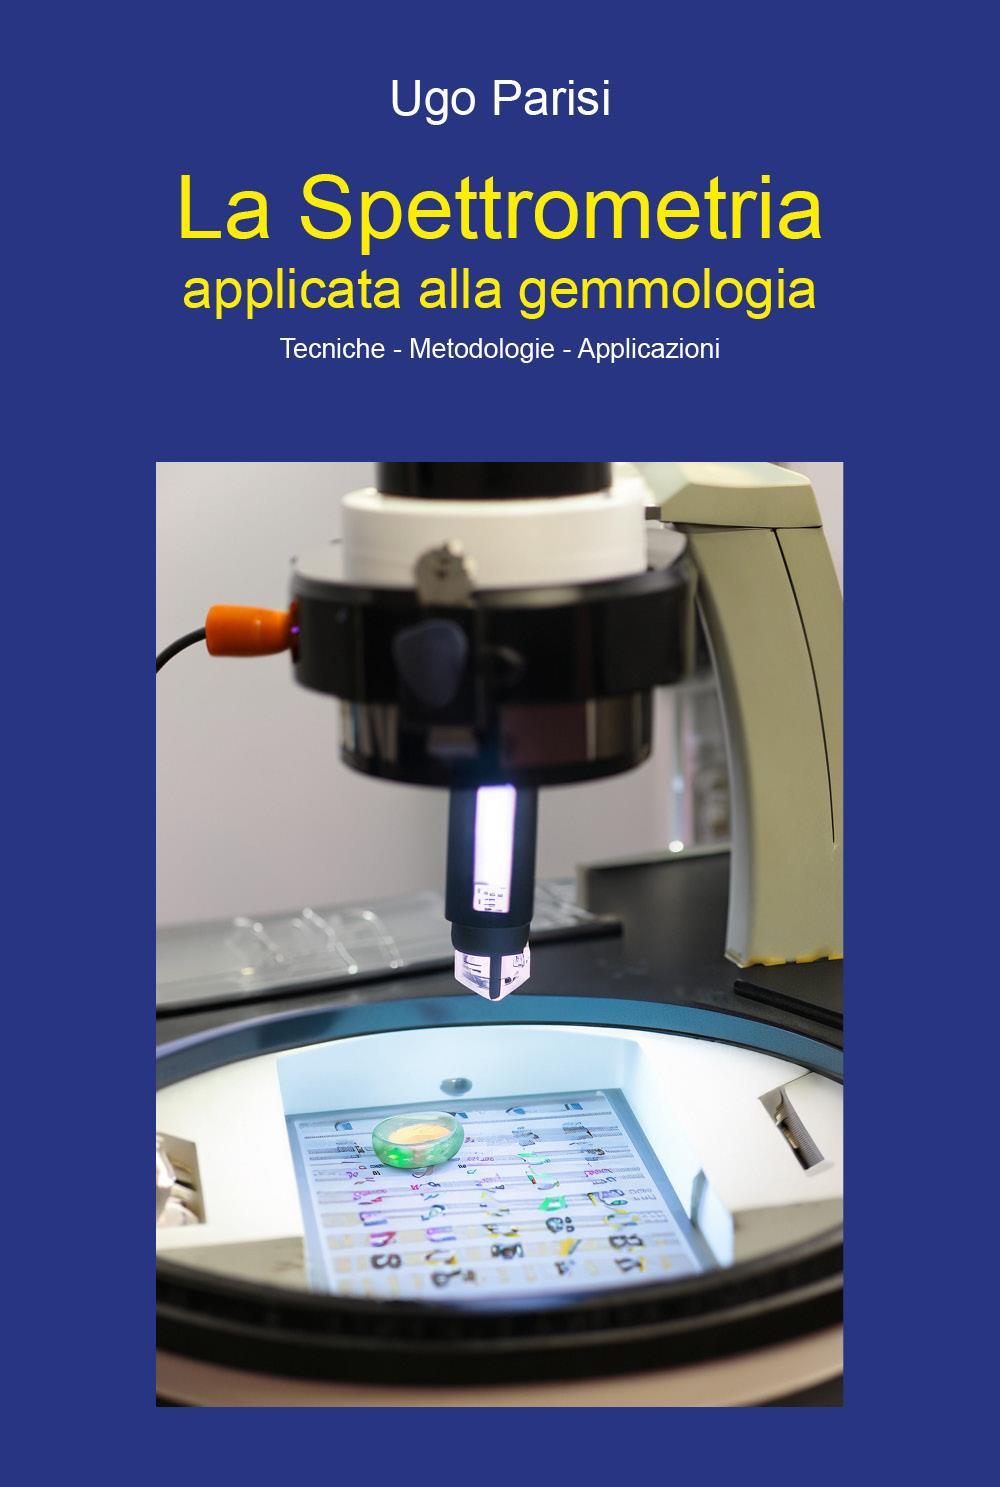 "La Spettrometria applicata alla gemmologia" Tecniche - Metodologie - Applicazioni